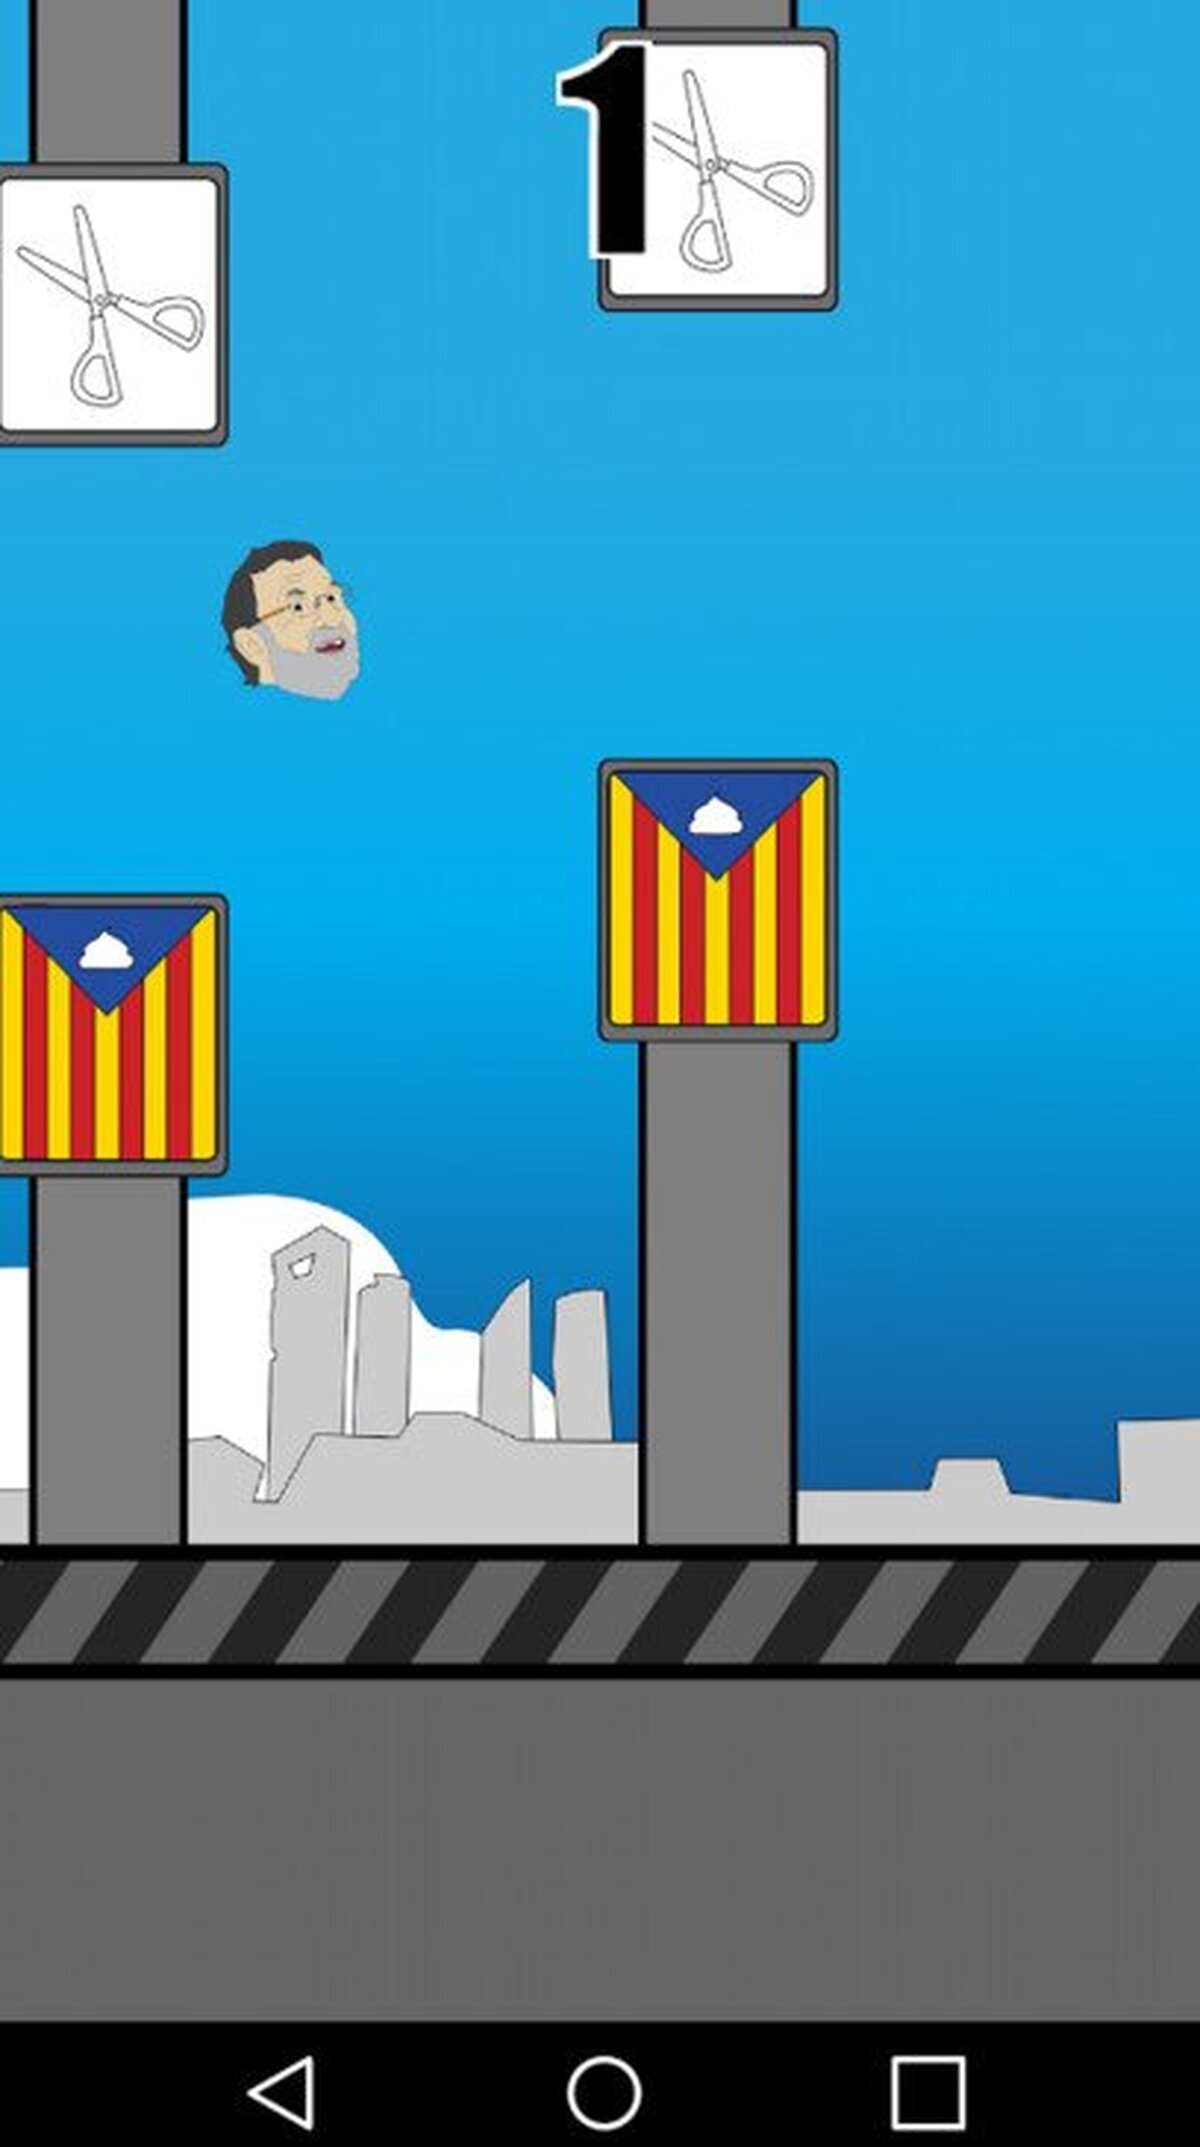 Crean un Flappy Bird protagonizado por políticos españoles